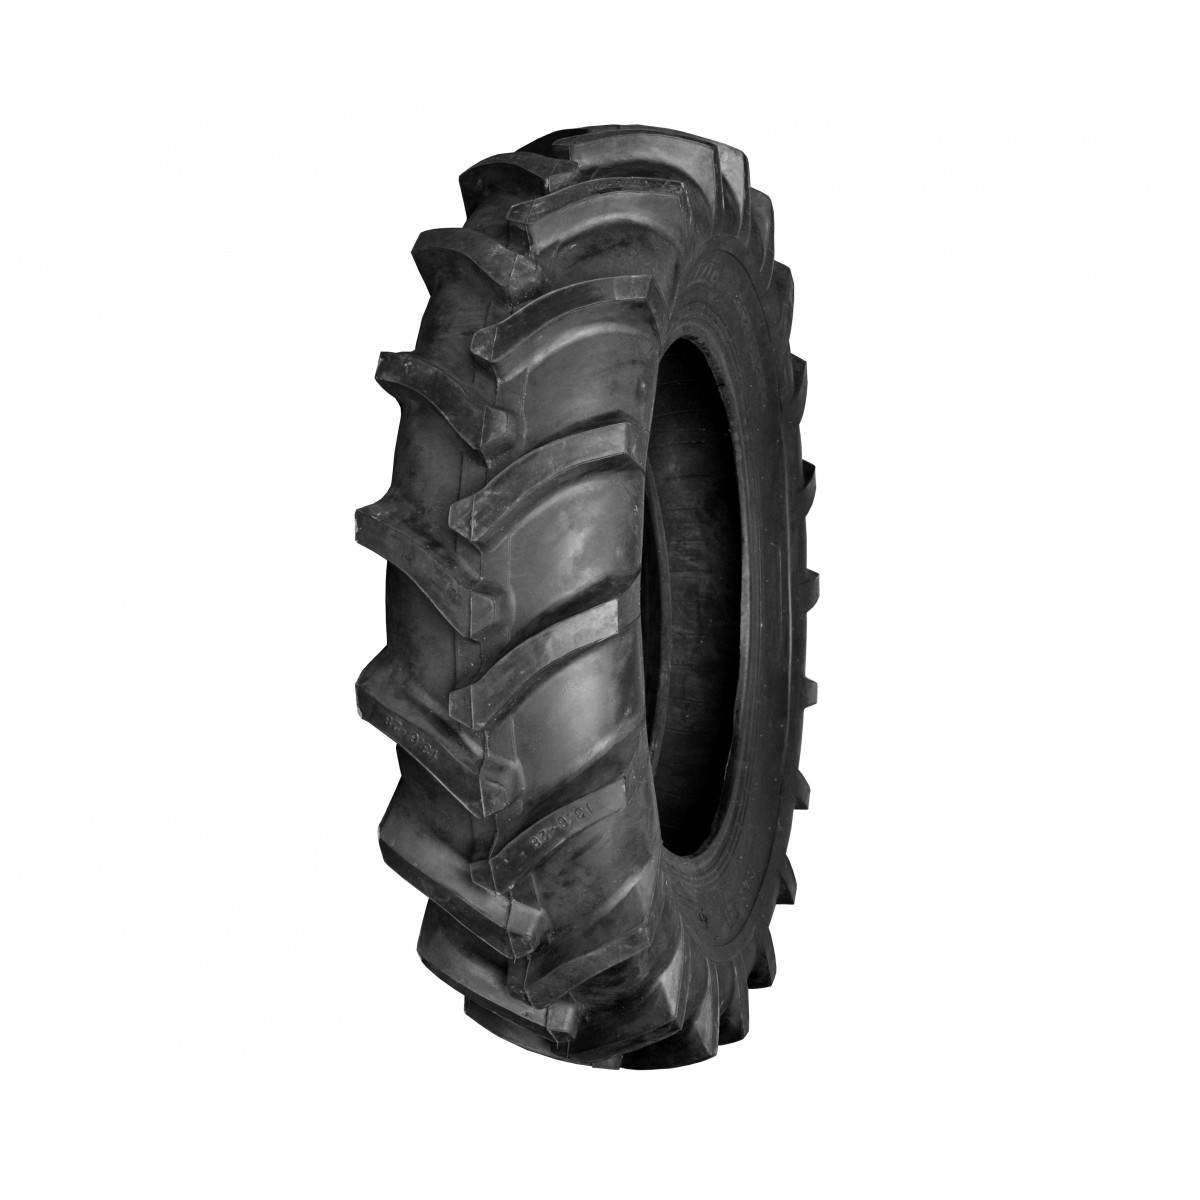 Agricultural tire 13.6-28 8PR 13.6x28 FIR